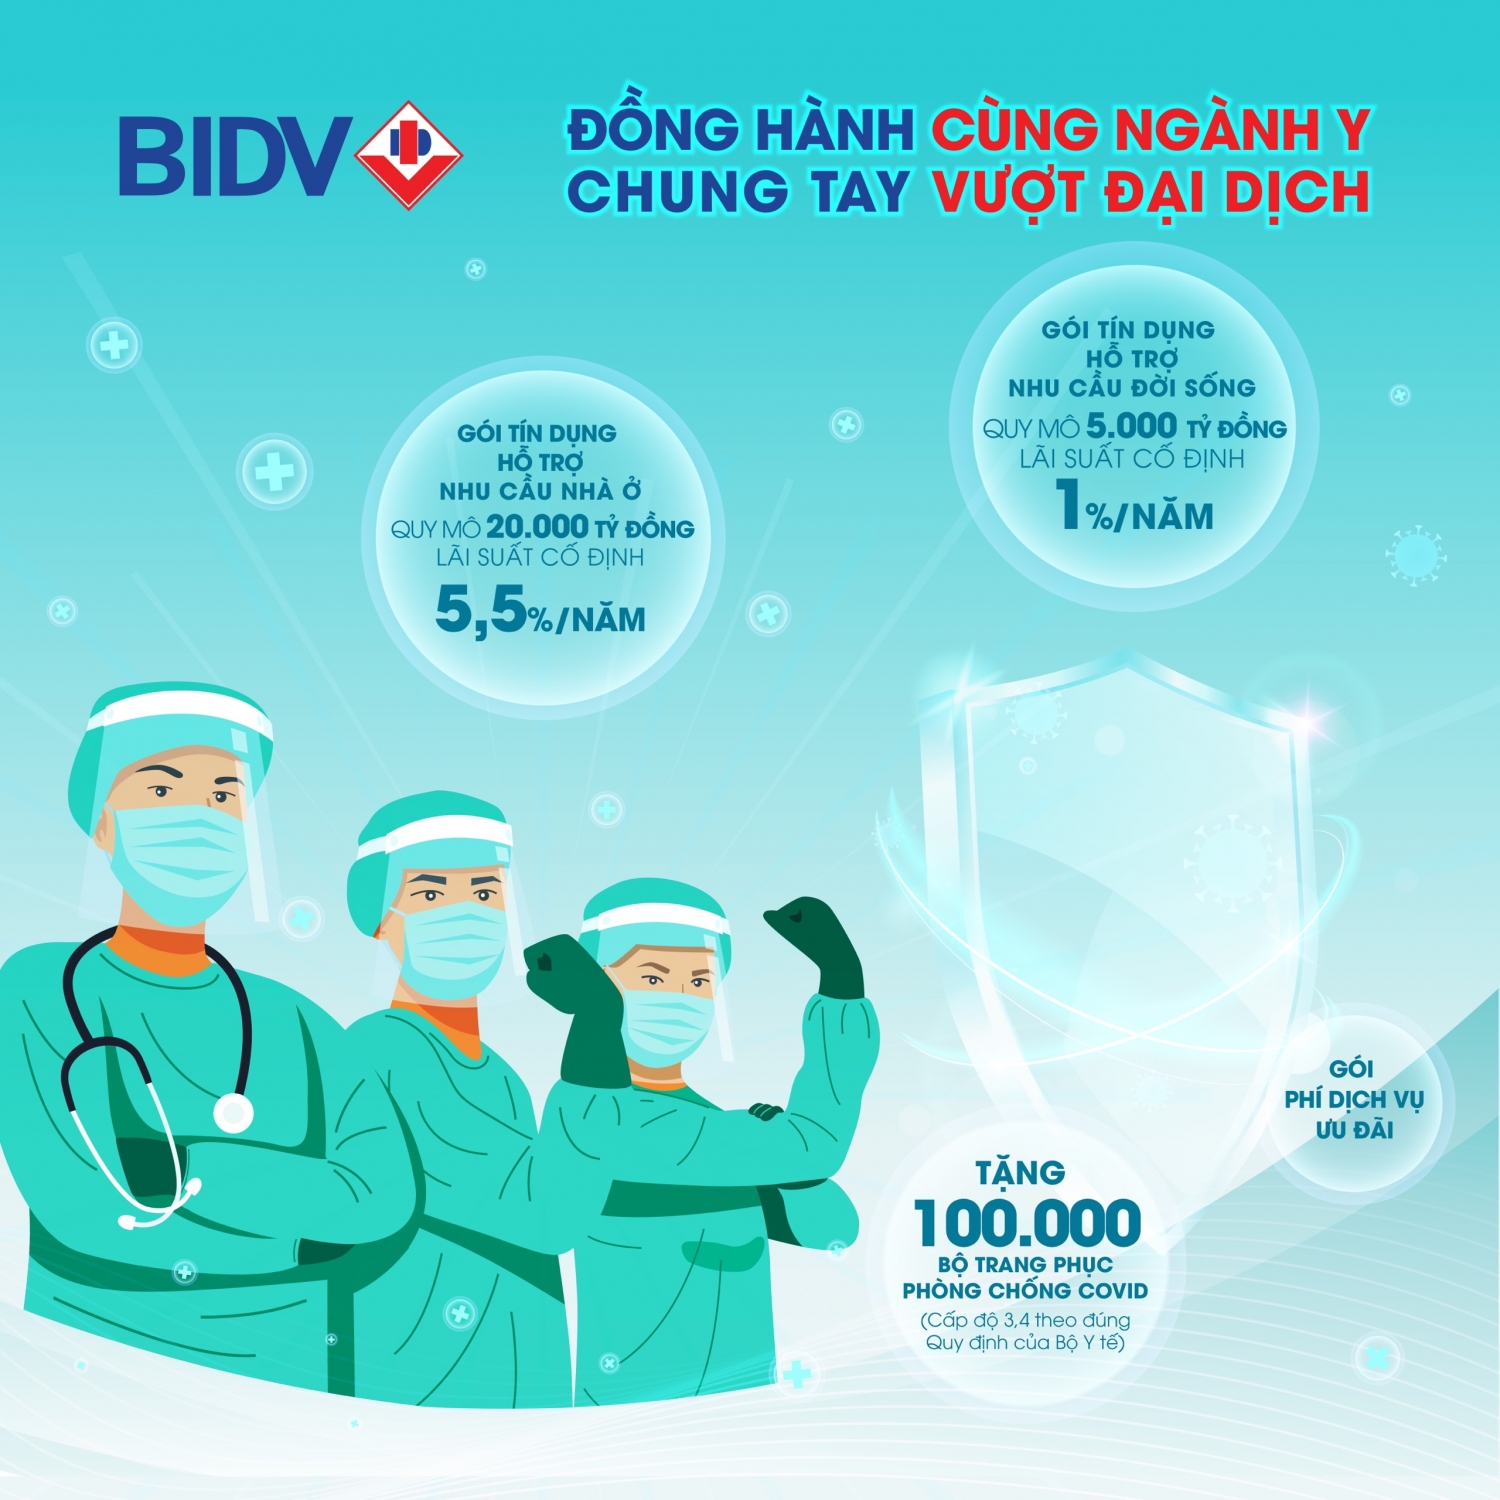 BIDV triển khai dịch vụ đặc biệt “Đồng hành cùng ngành y, chung tay vượt đại dịch”